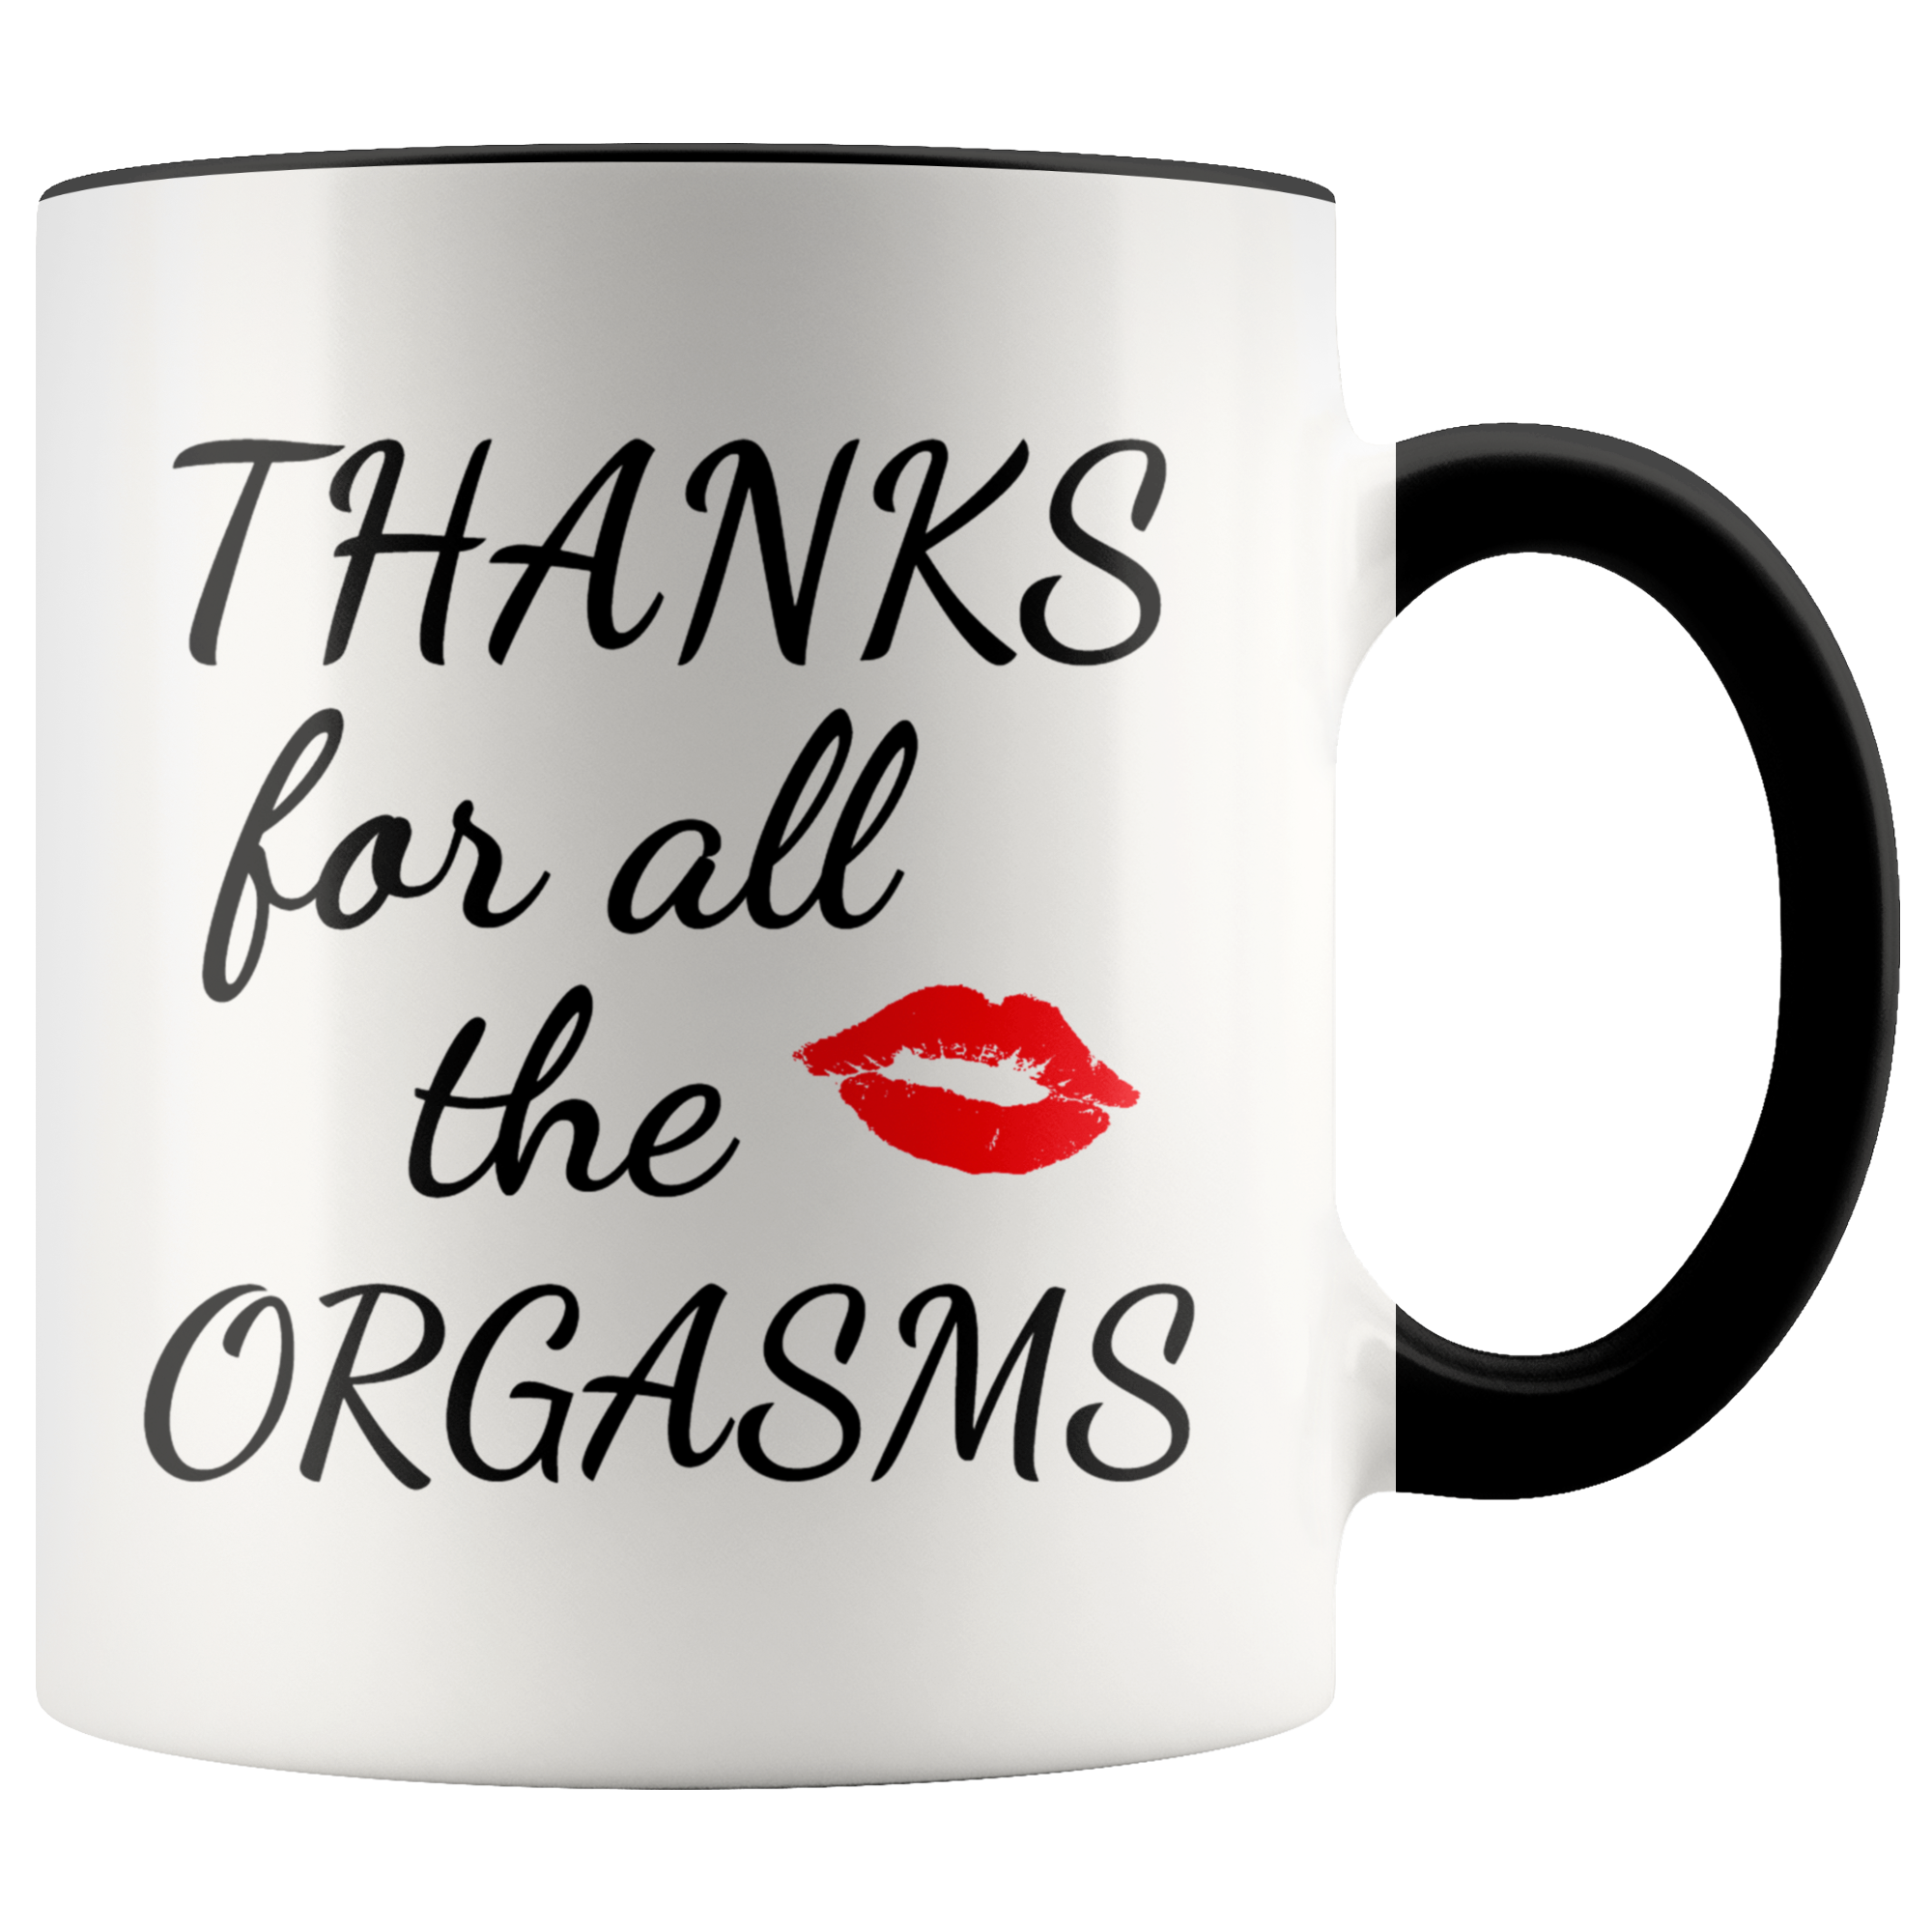 Thanks for Orgasms Mug